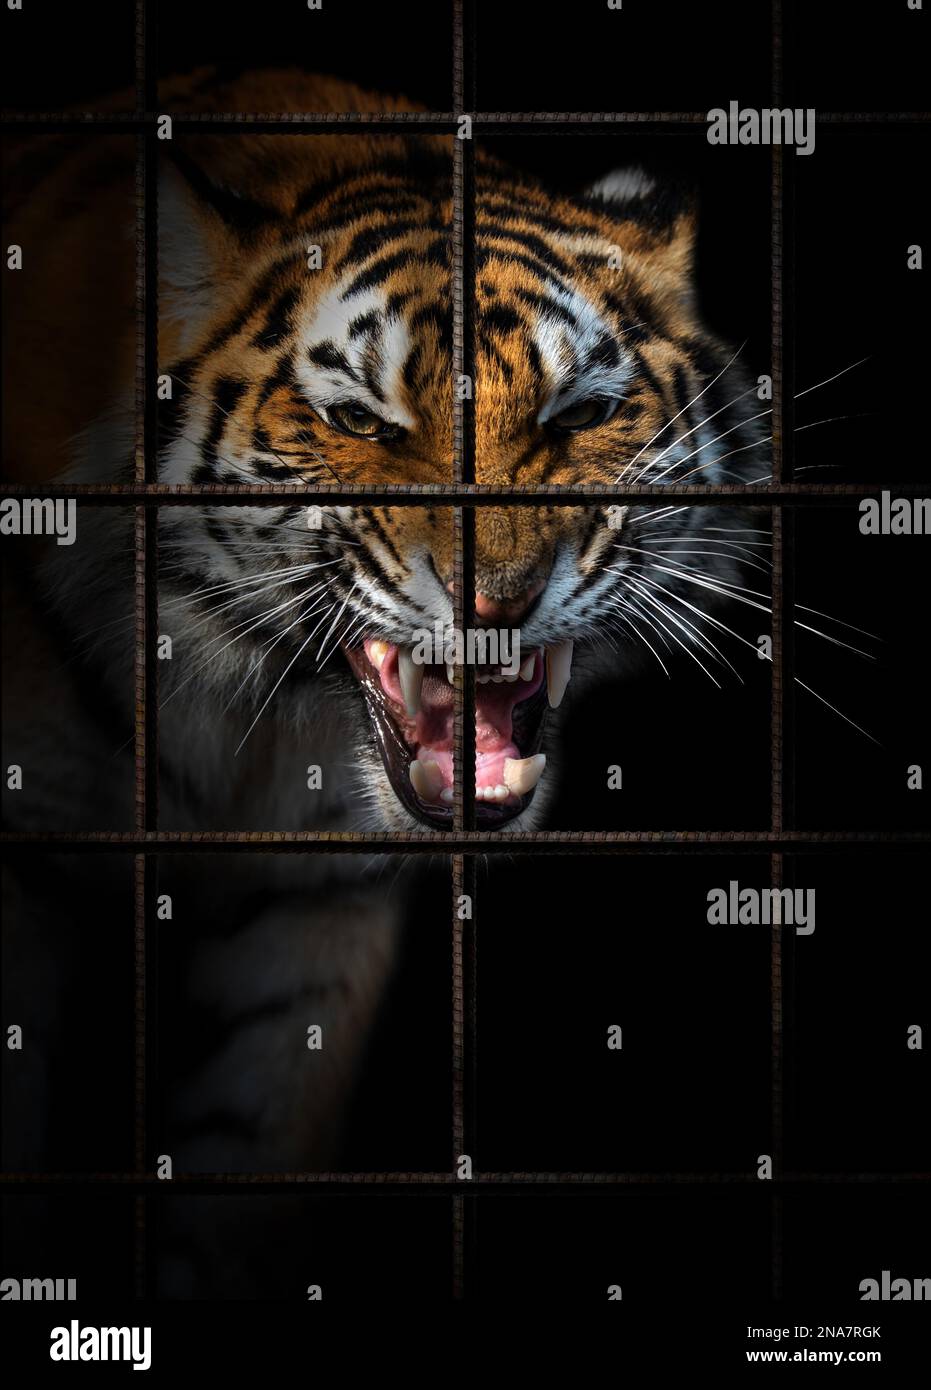 Tiger im Eisenkäfig auf schwarzem Hintergrund. Tierschutzkonzept Stockfoto